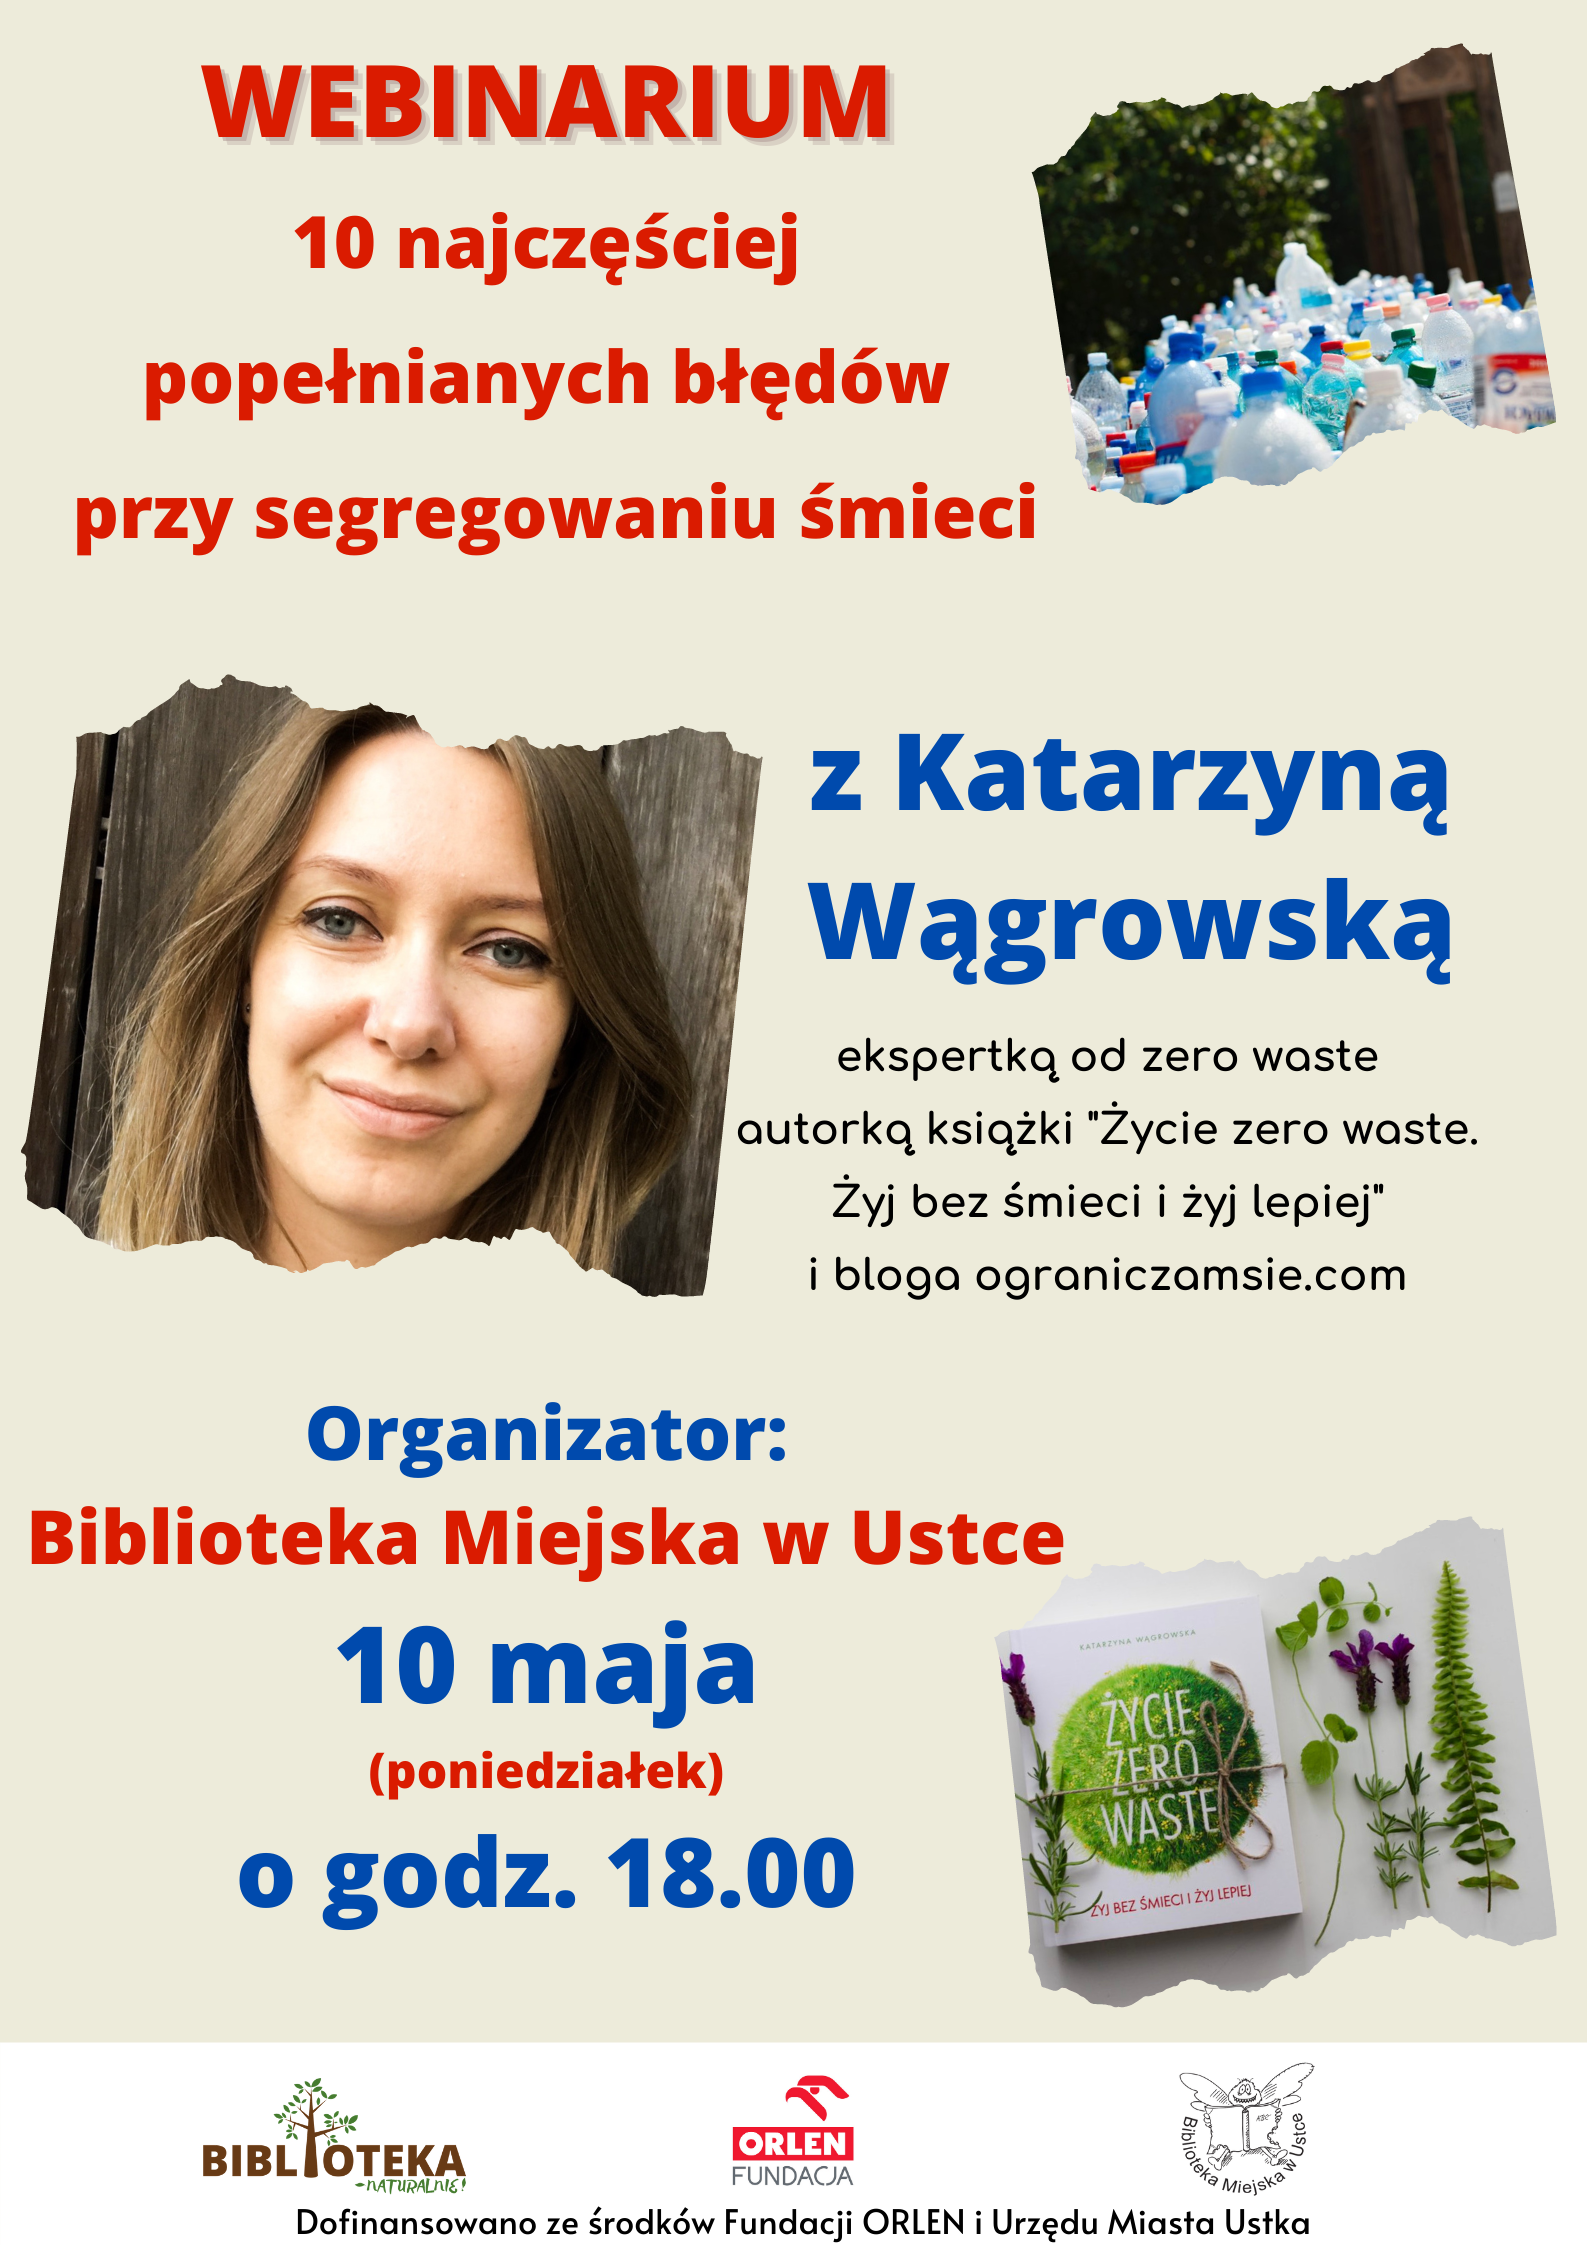 Plakat odnosnie webinarium z Katarzyna Wagrowska